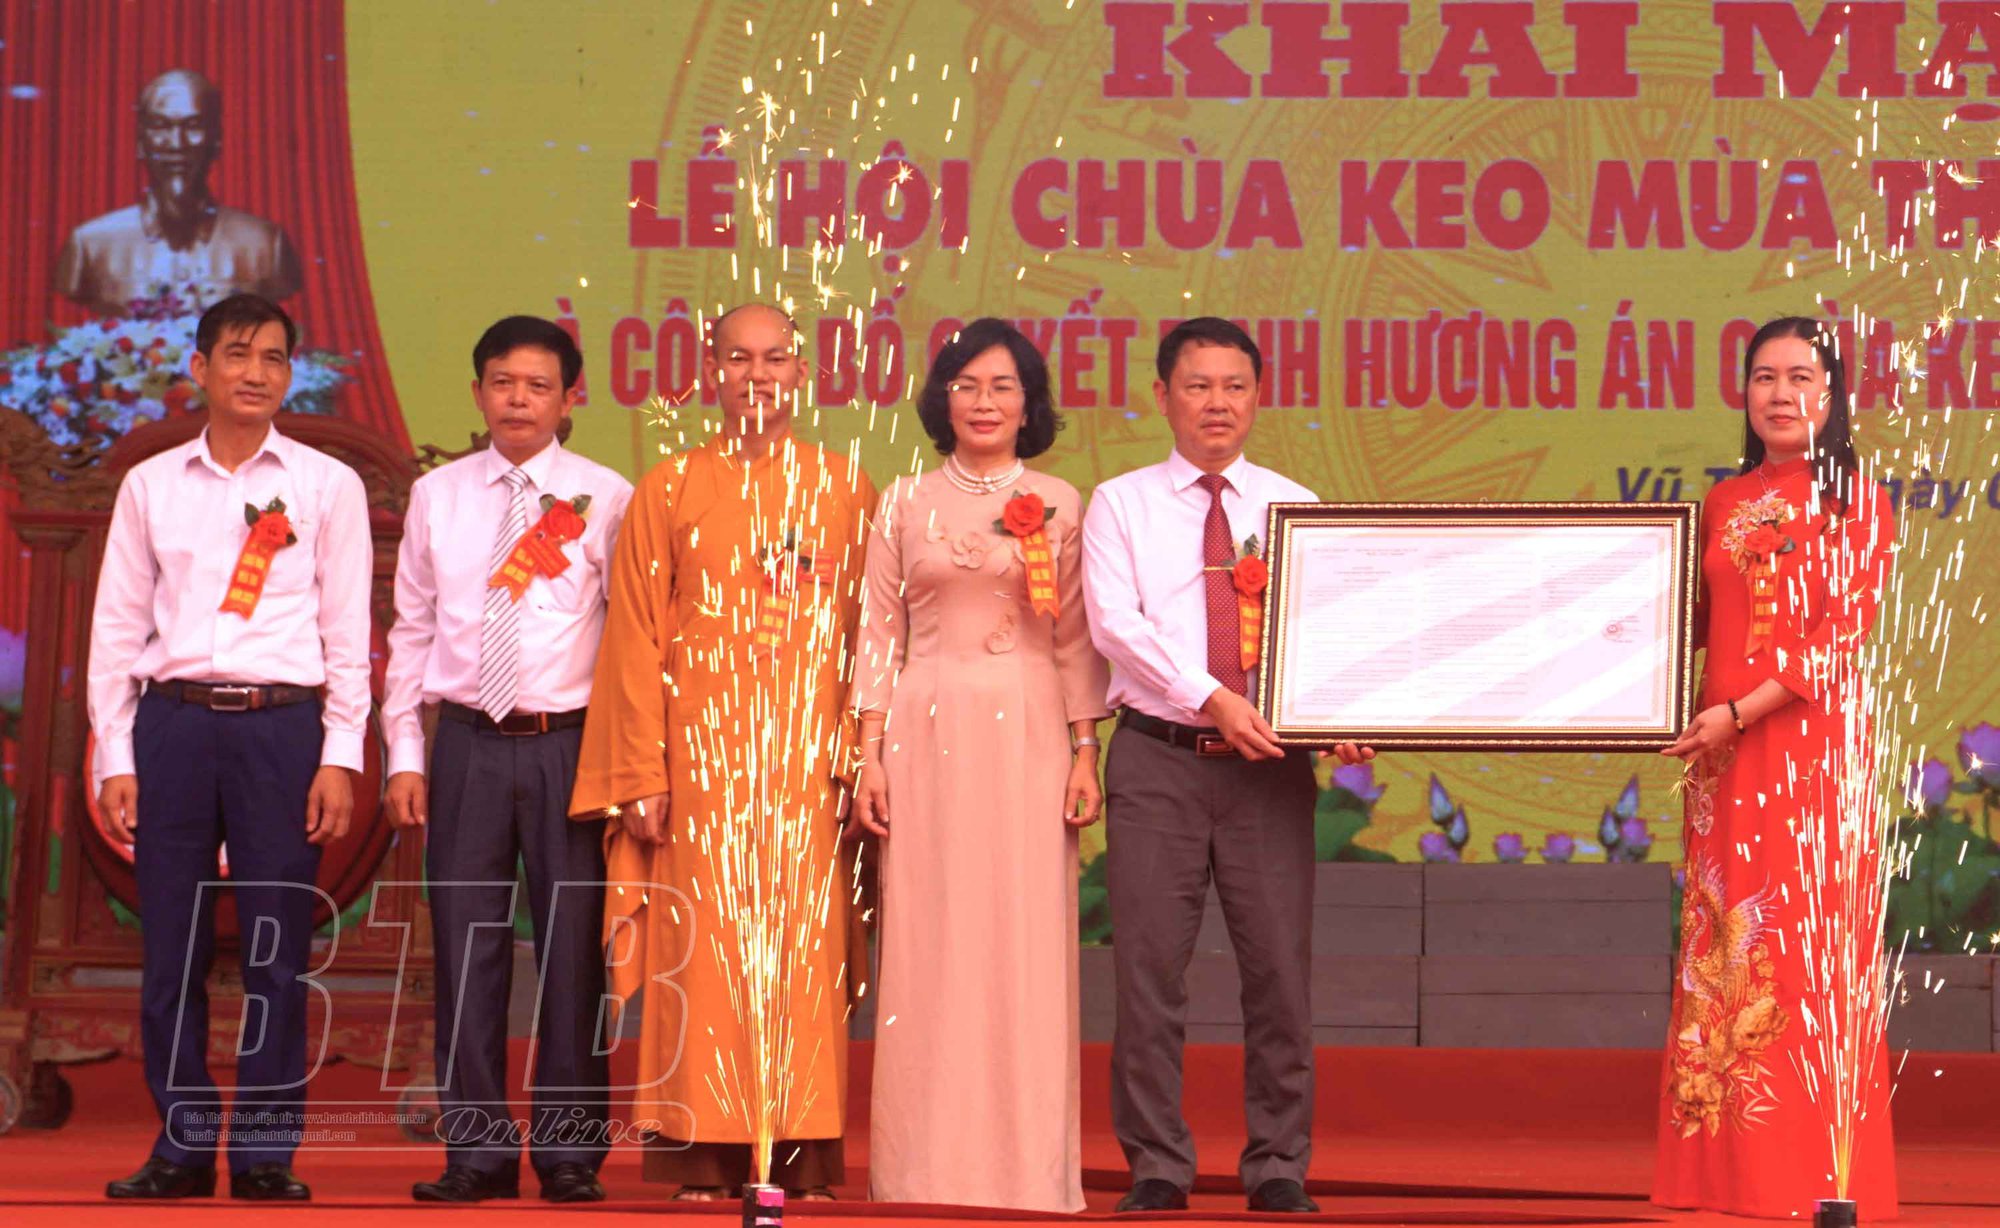 Thái Bình: Khai mạc lễ hội chùa Keo mùa thu năm 2022 - Ảnh 1.